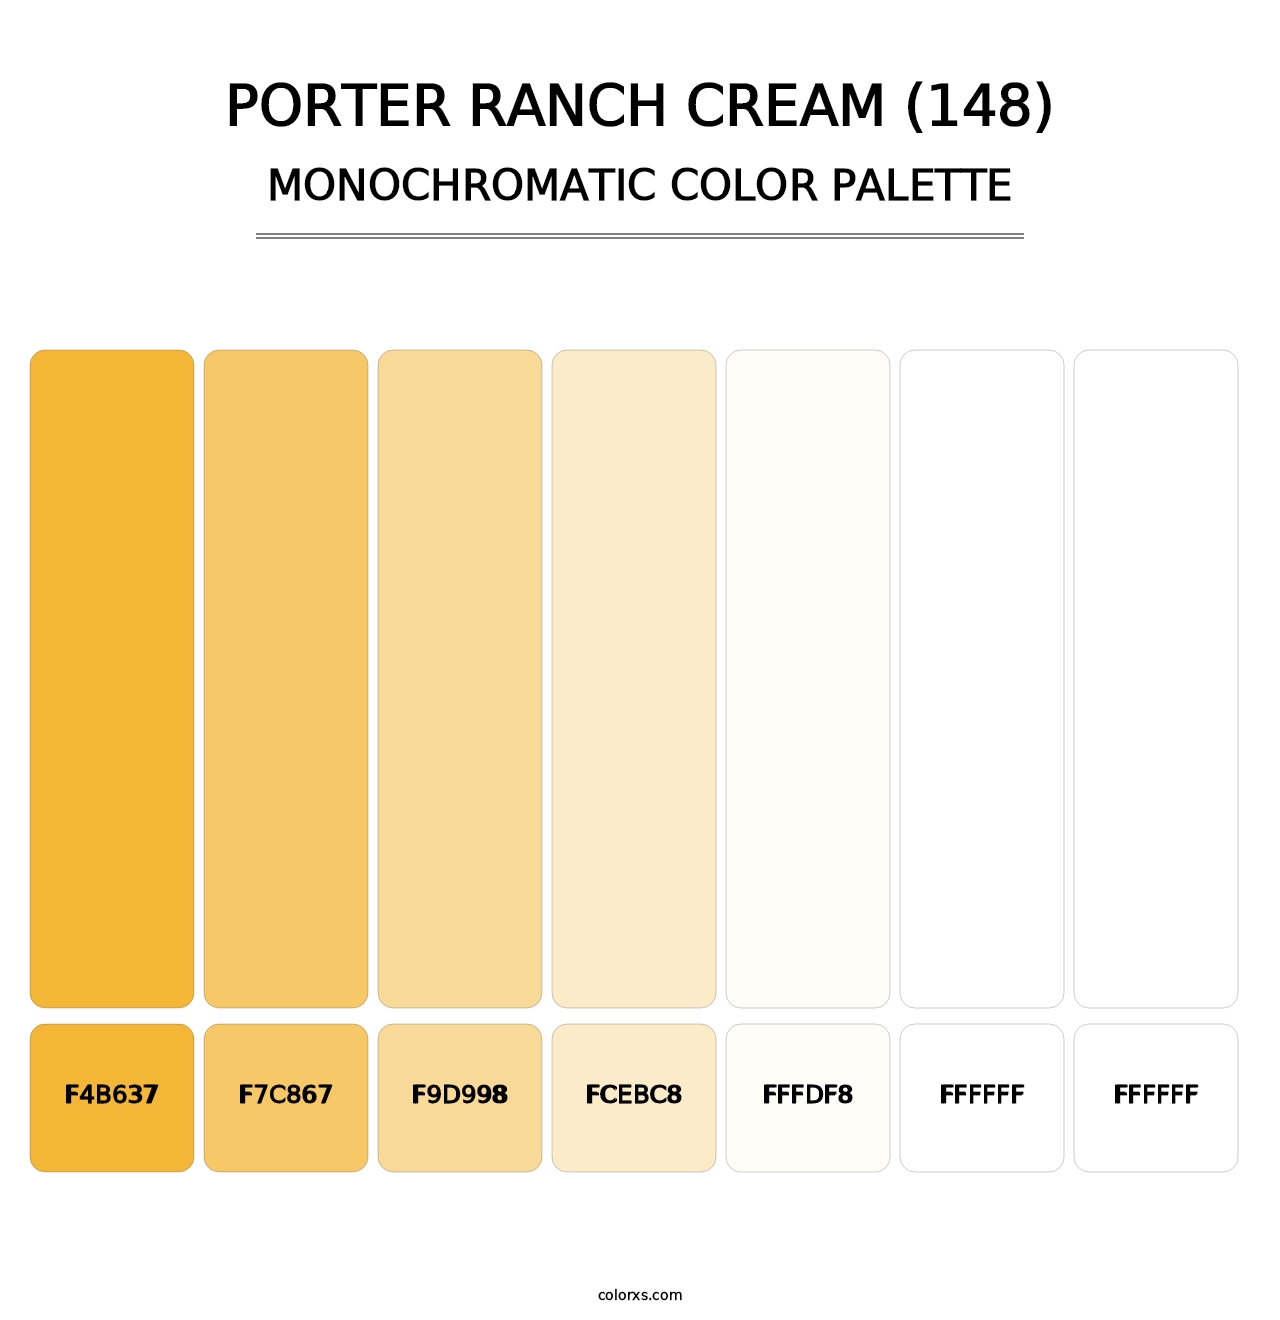 Porter Ranch Cream (148) - Monochromatic Color Palette